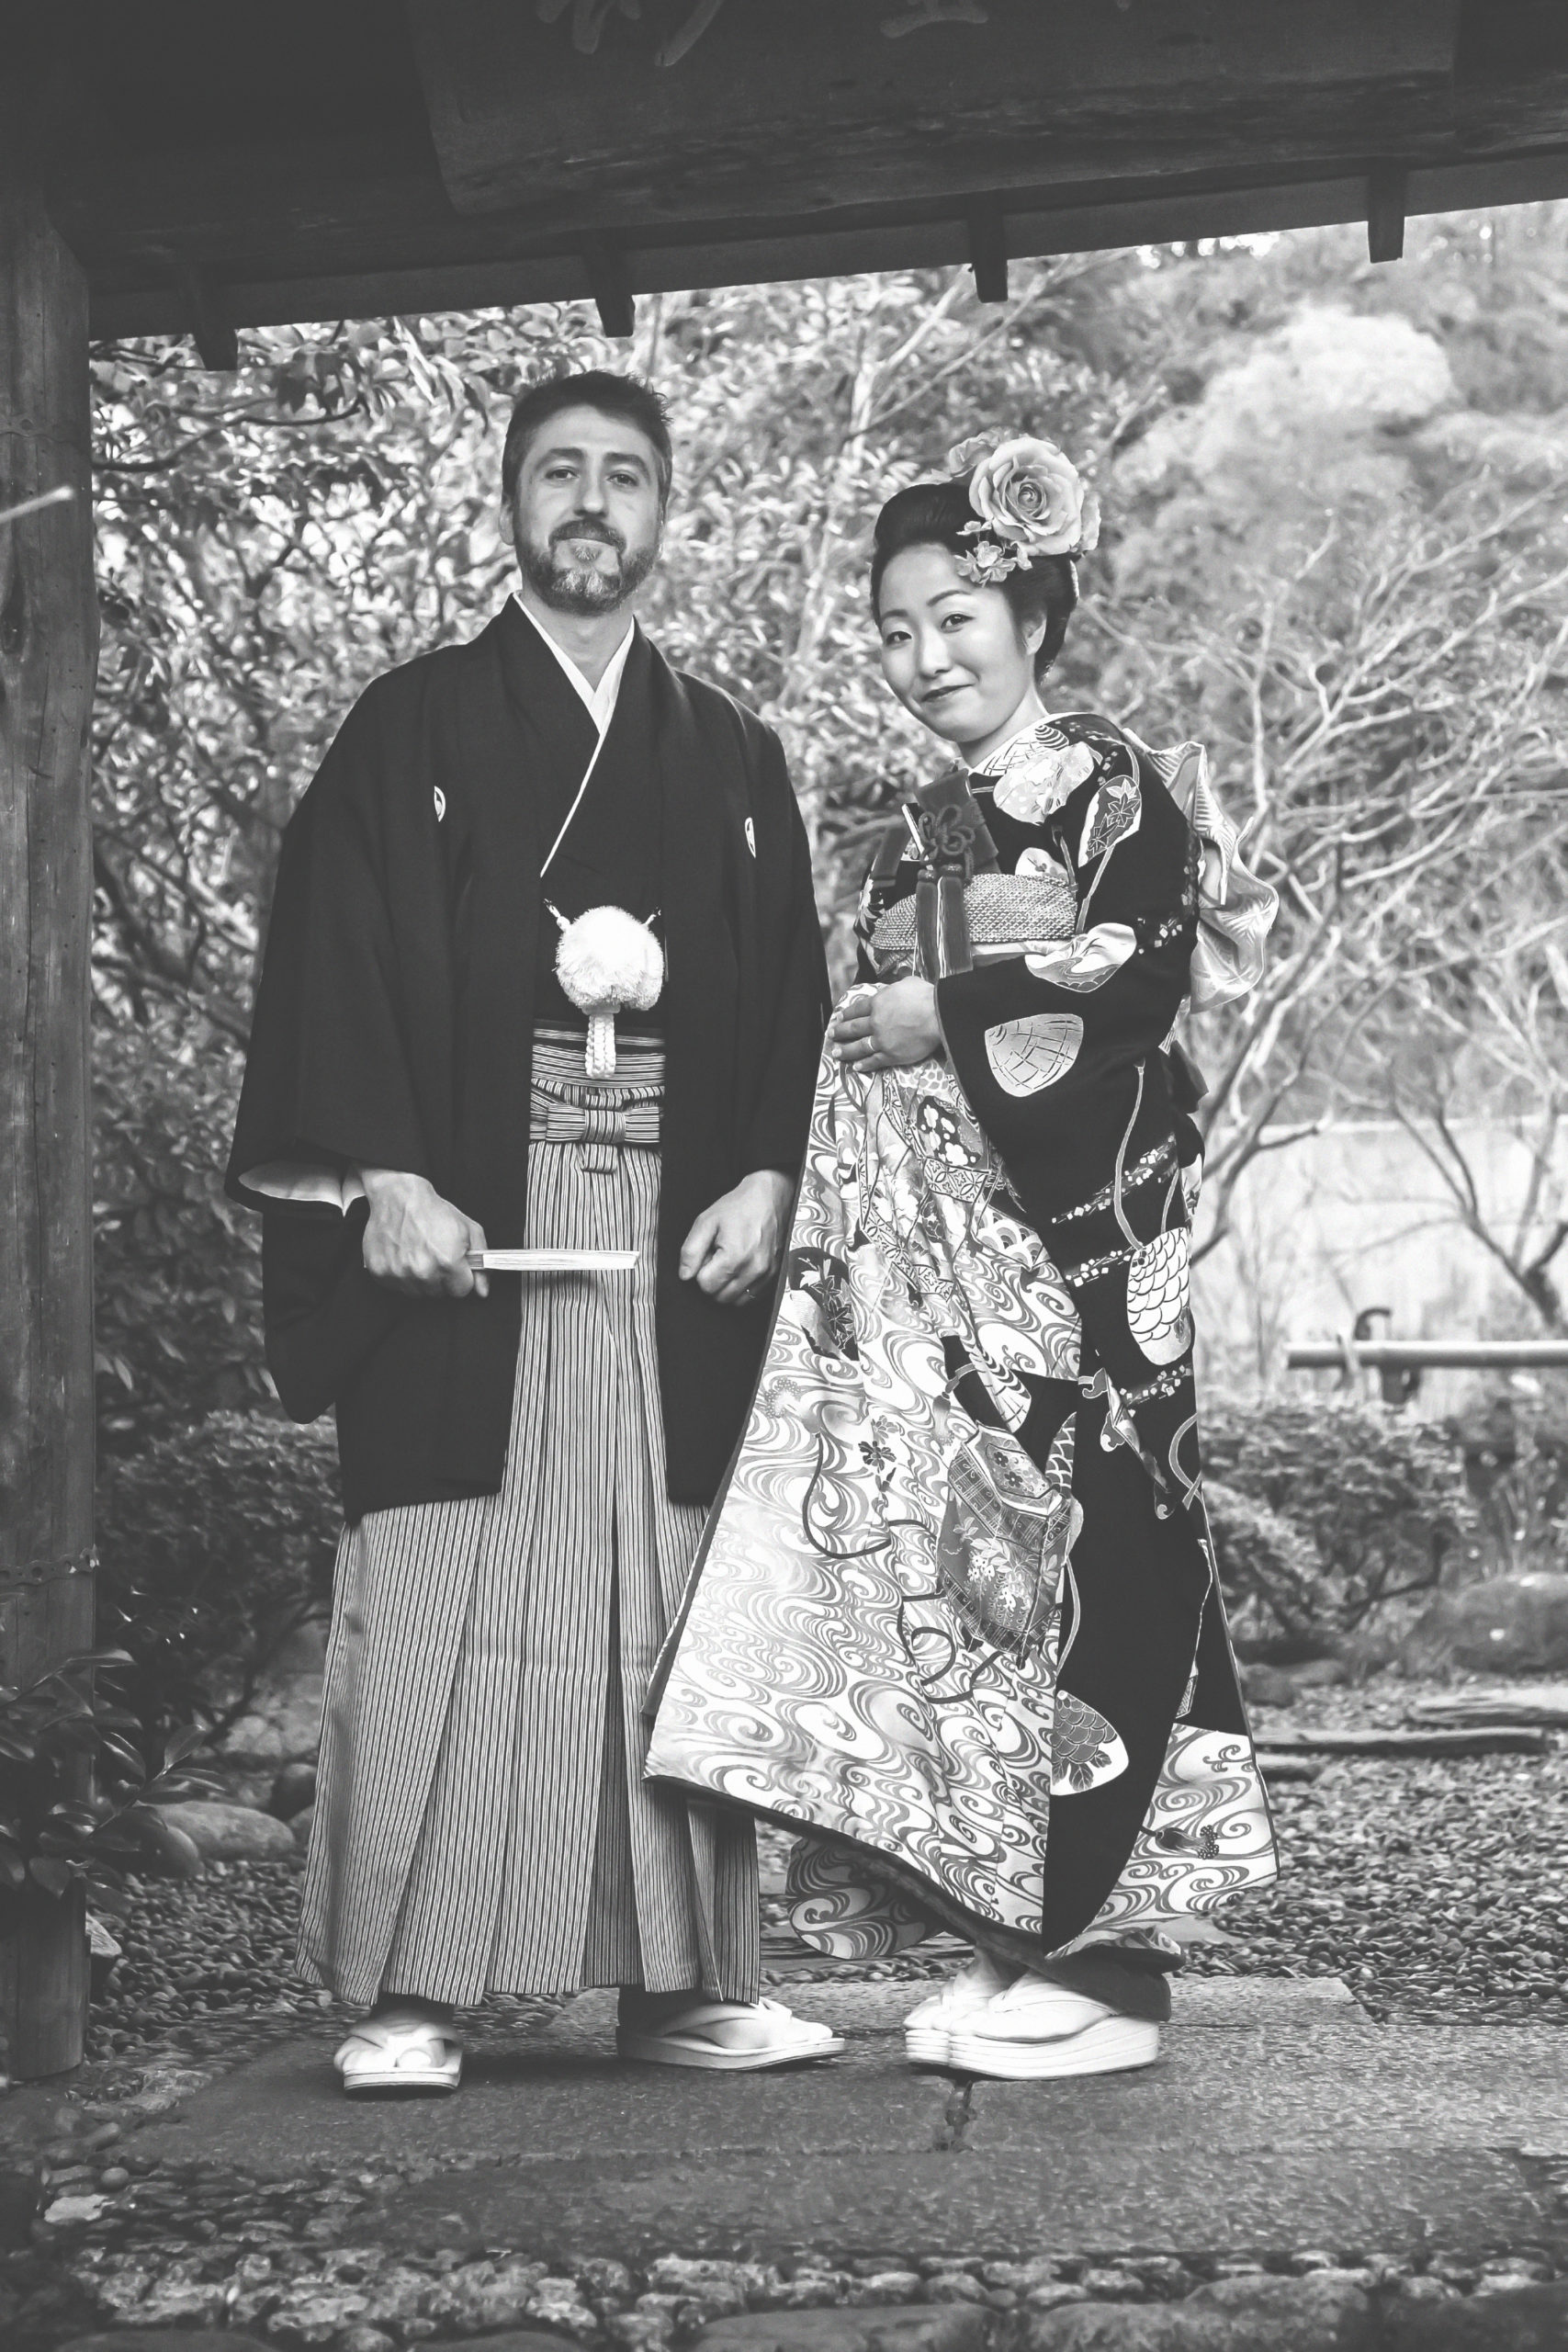 Photographe de mariage à l'étranger, mariage au Japon, portrait des mariés